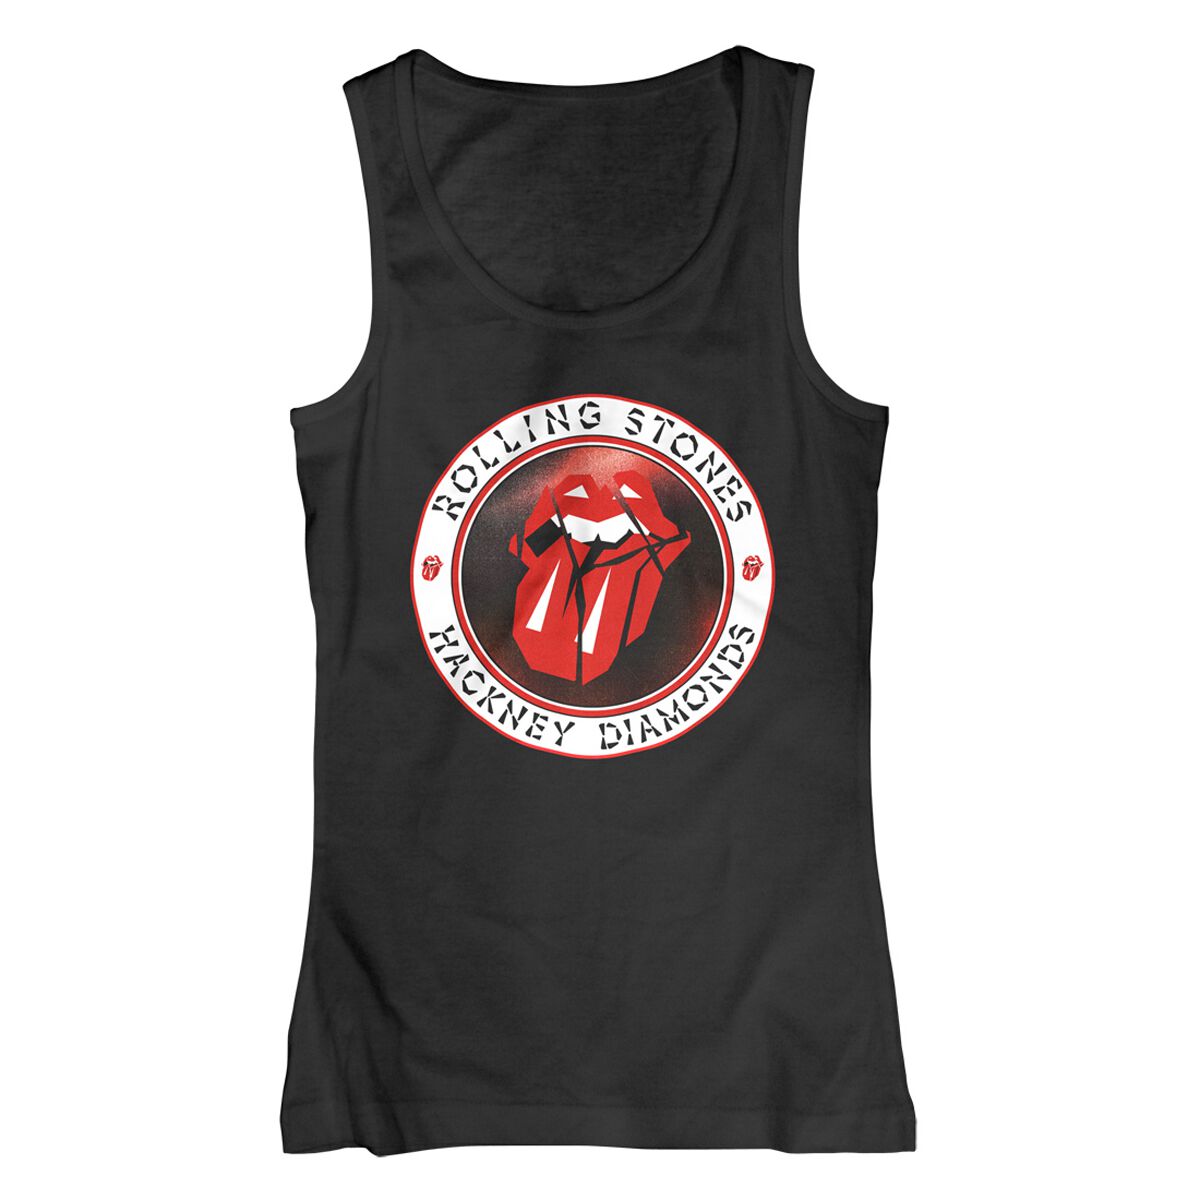 The Rolling Stones Top - Hackney Diamonds Circle Label - S bis XXL - für Damen - Größe L - schwarz  - Lizenziertes Merchandise!